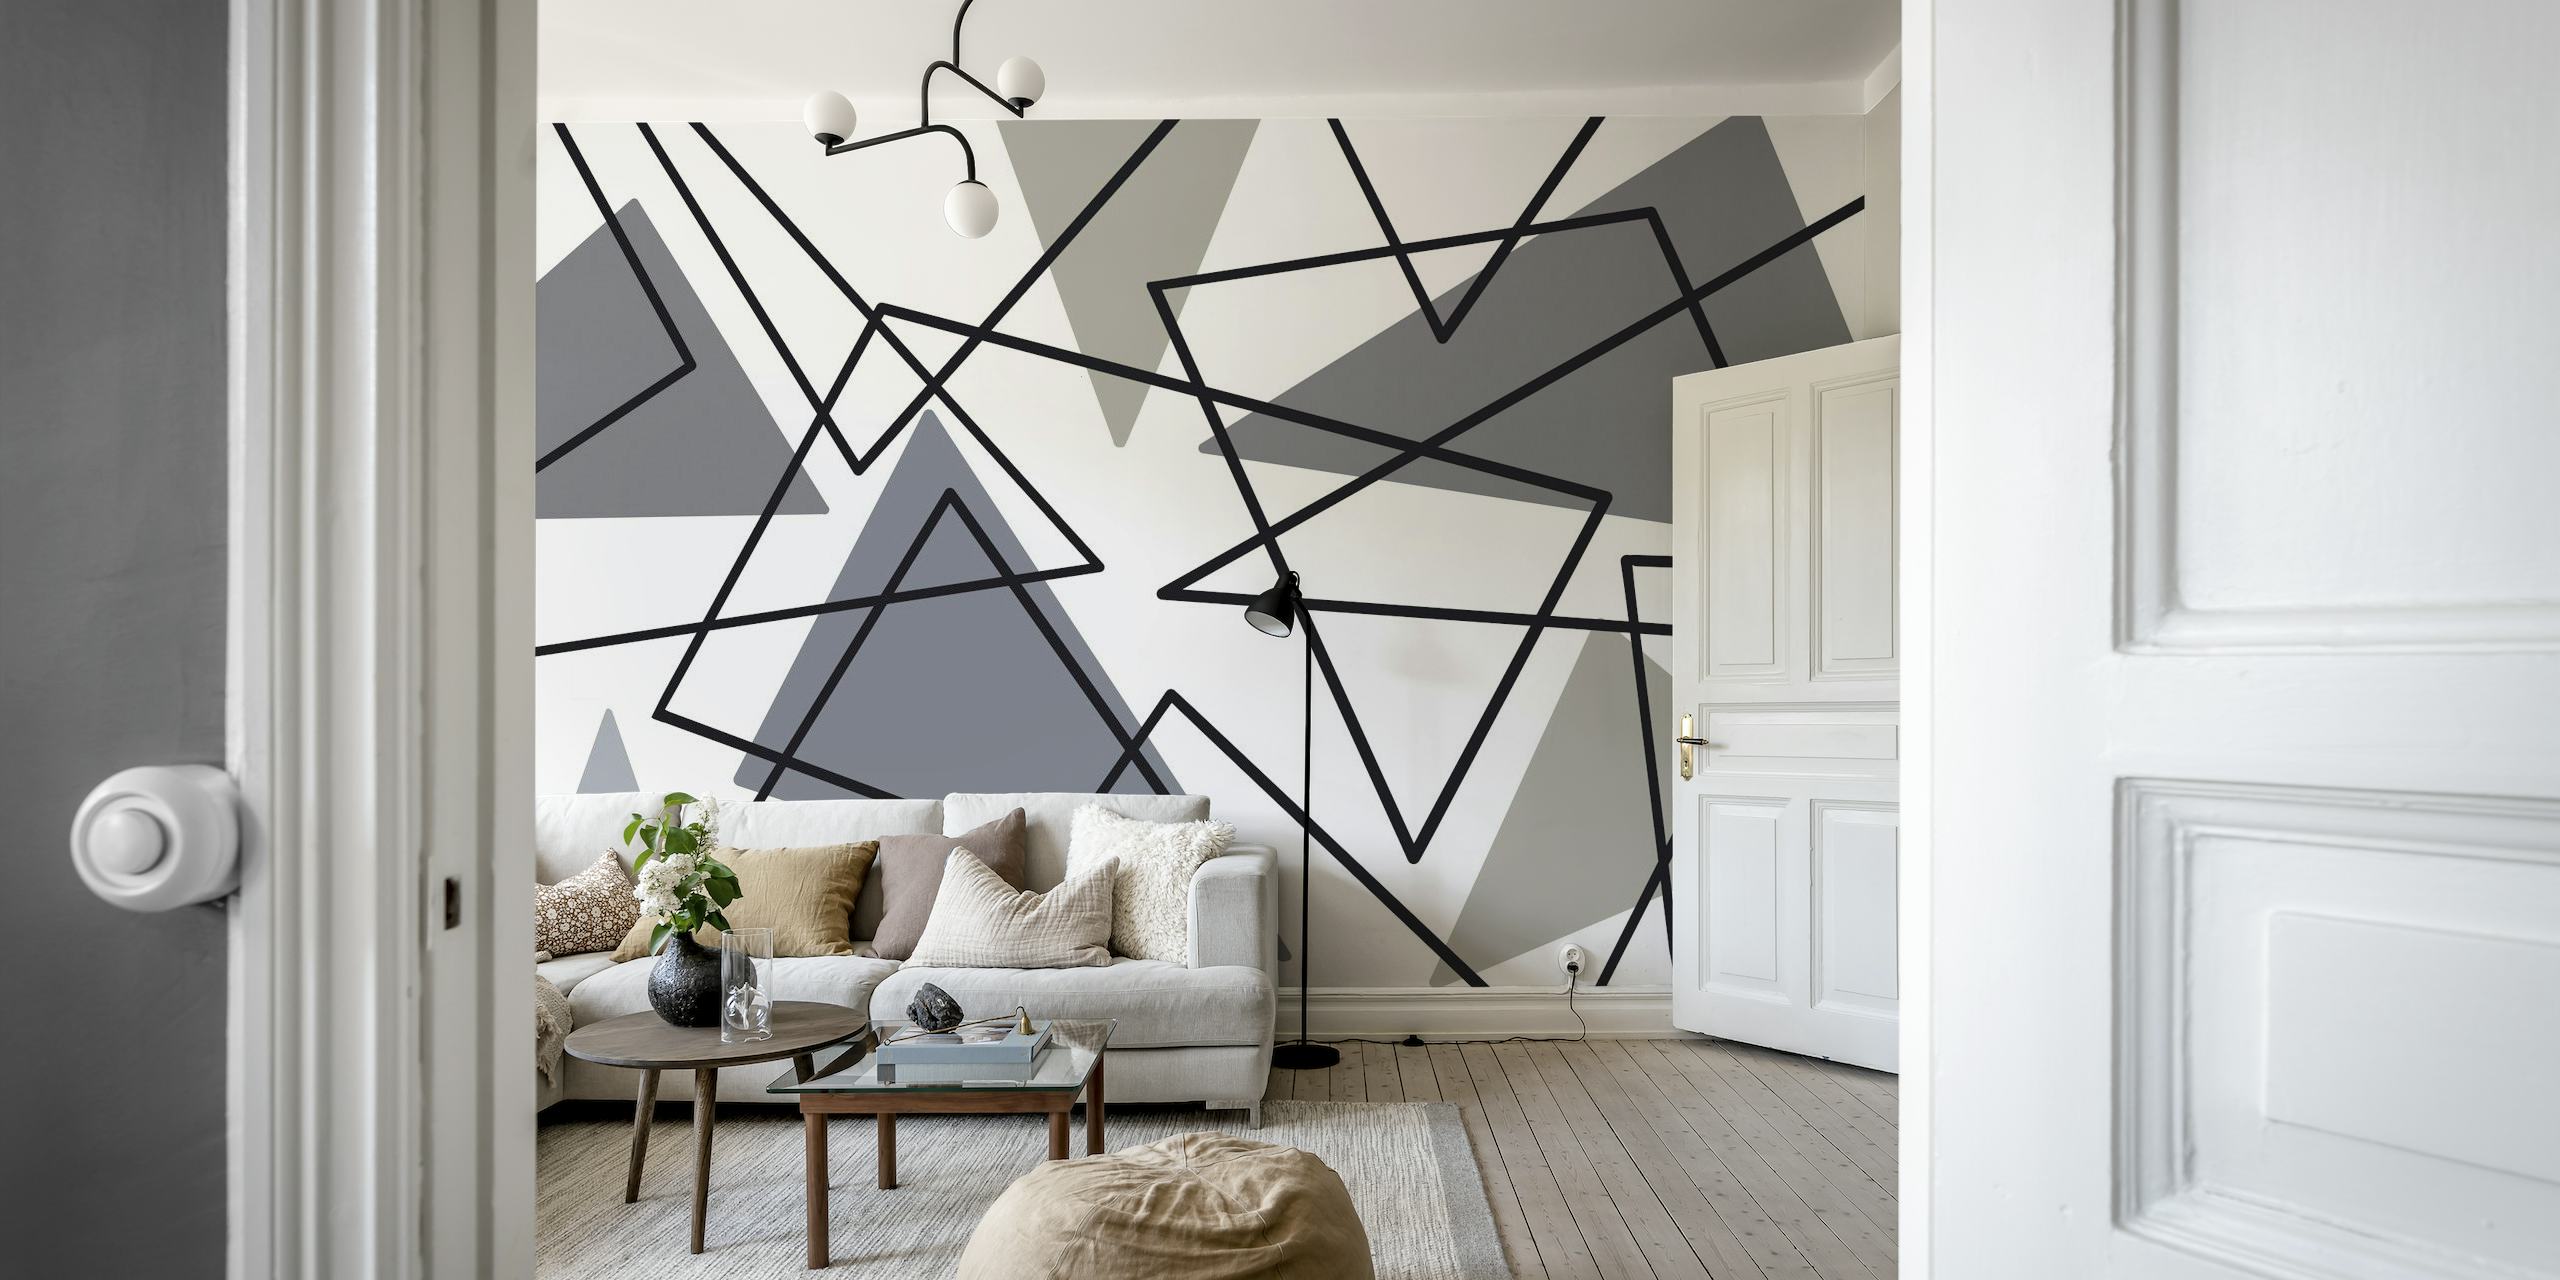 Abstrakt minimalistisk triangelmönster tapet i gråskala